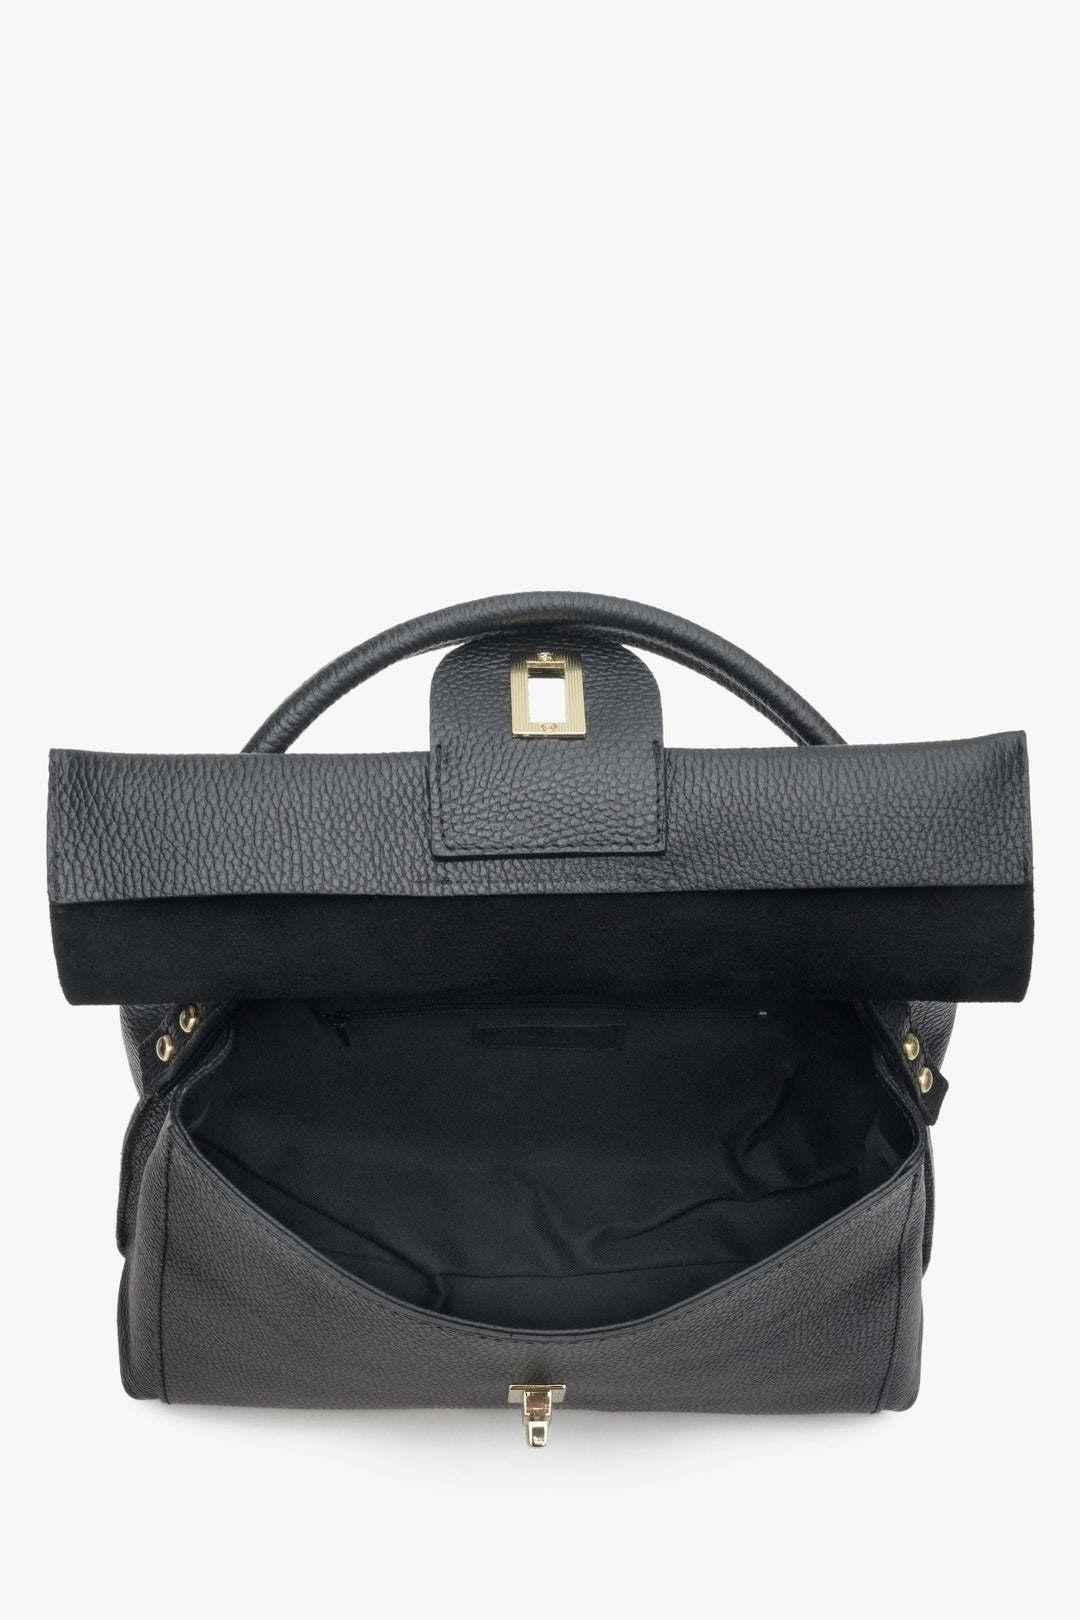 Torebka damska w kolorze czarnym typu kuferek marki Estro - zbliżenie na wnętrze.